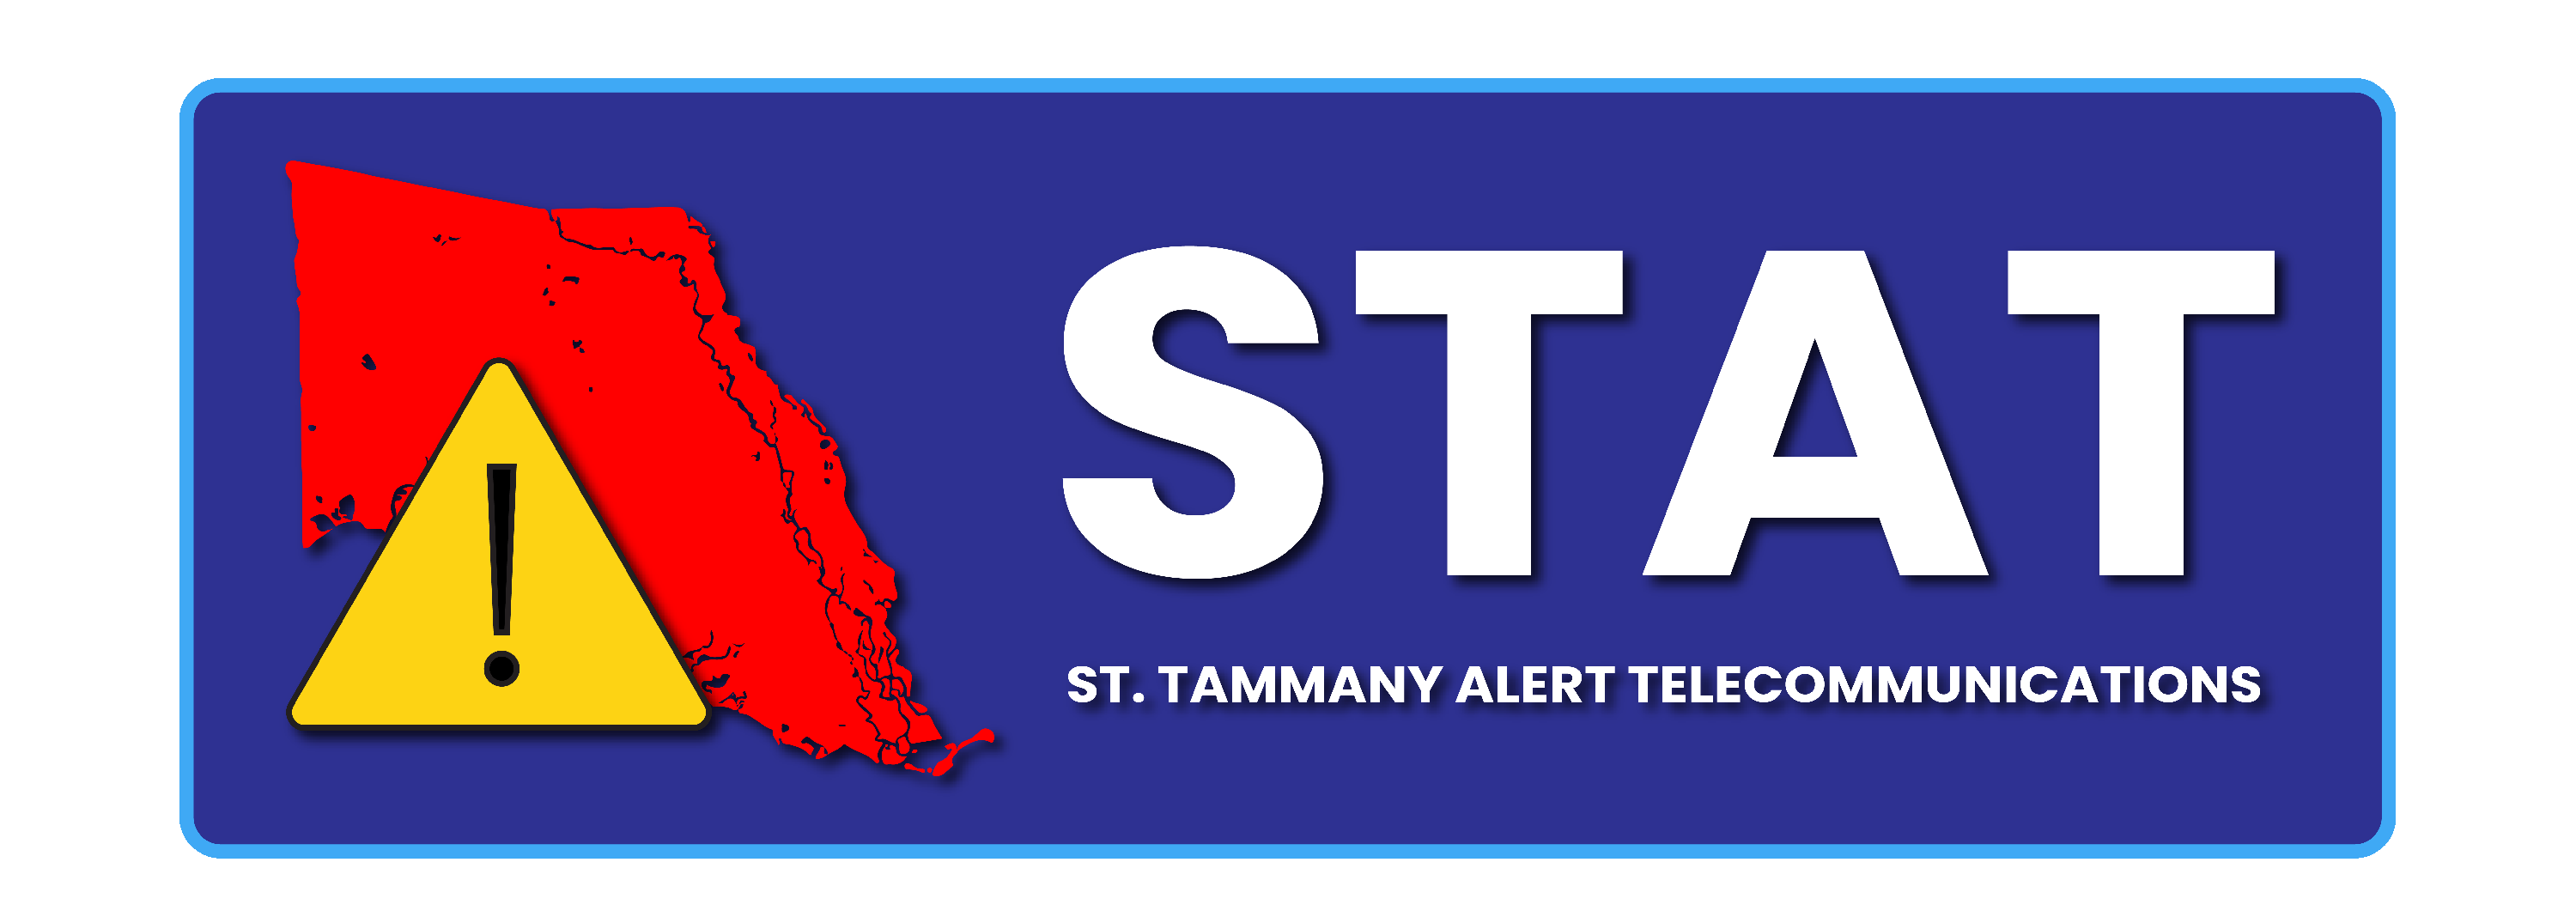 stat-alert-system---banner-logo